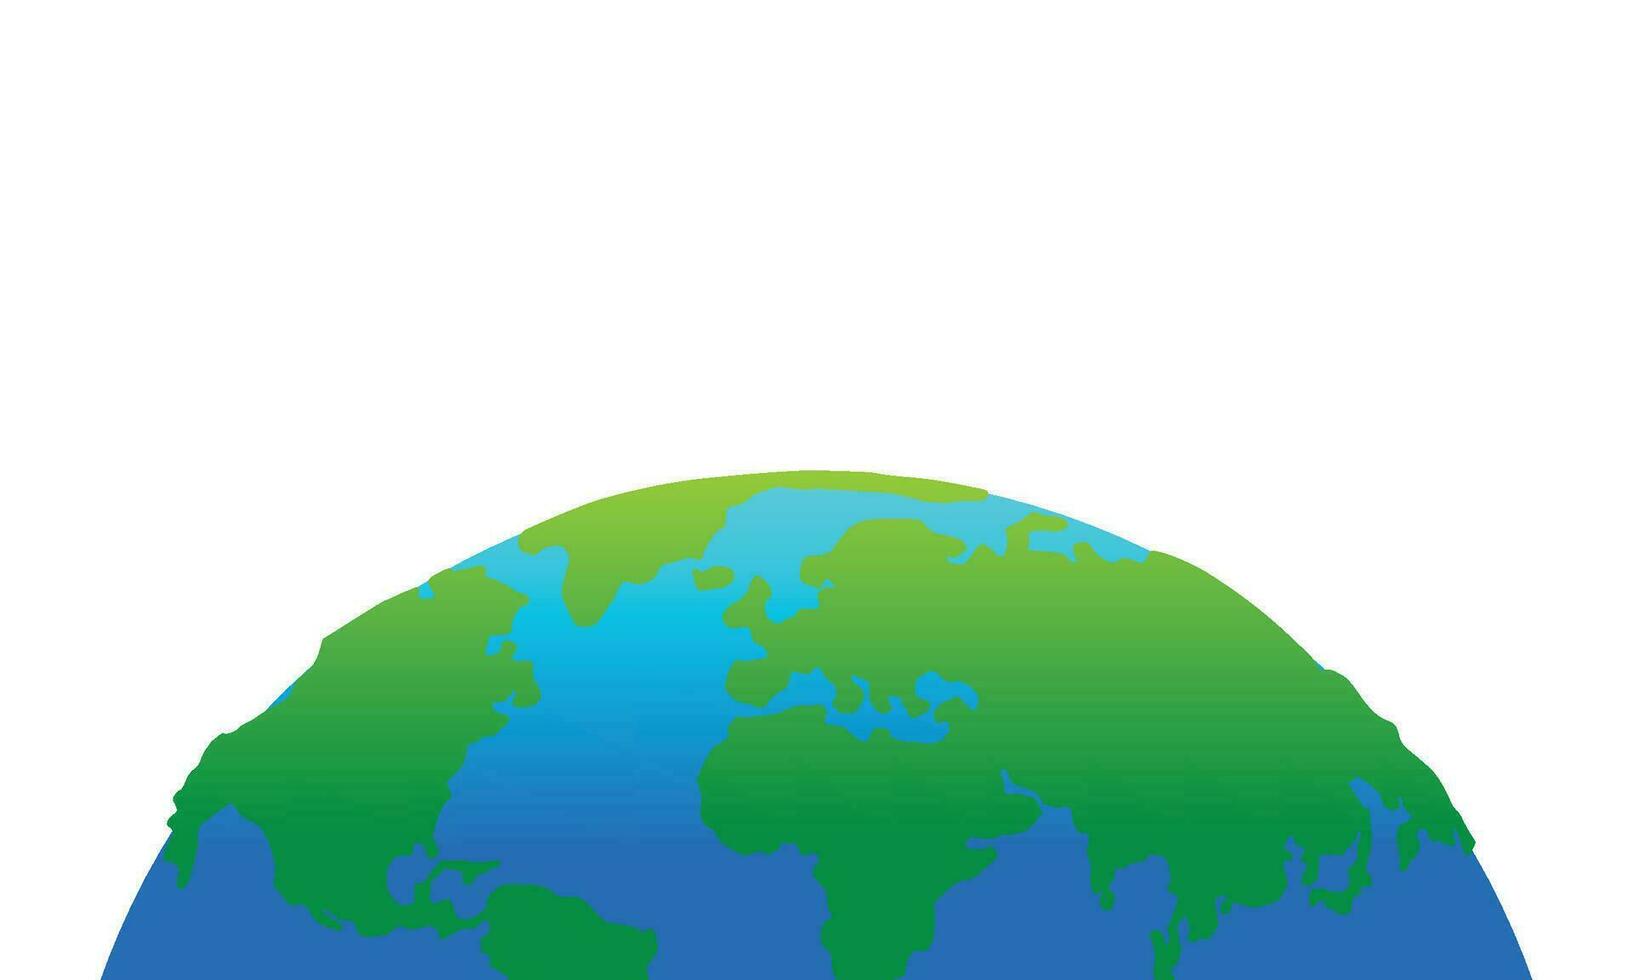 Vektor Erde Globus mit Grün Kontinente. modern Welt Karte Konzept. Welt Karte realistisch Blau Ball Illustration